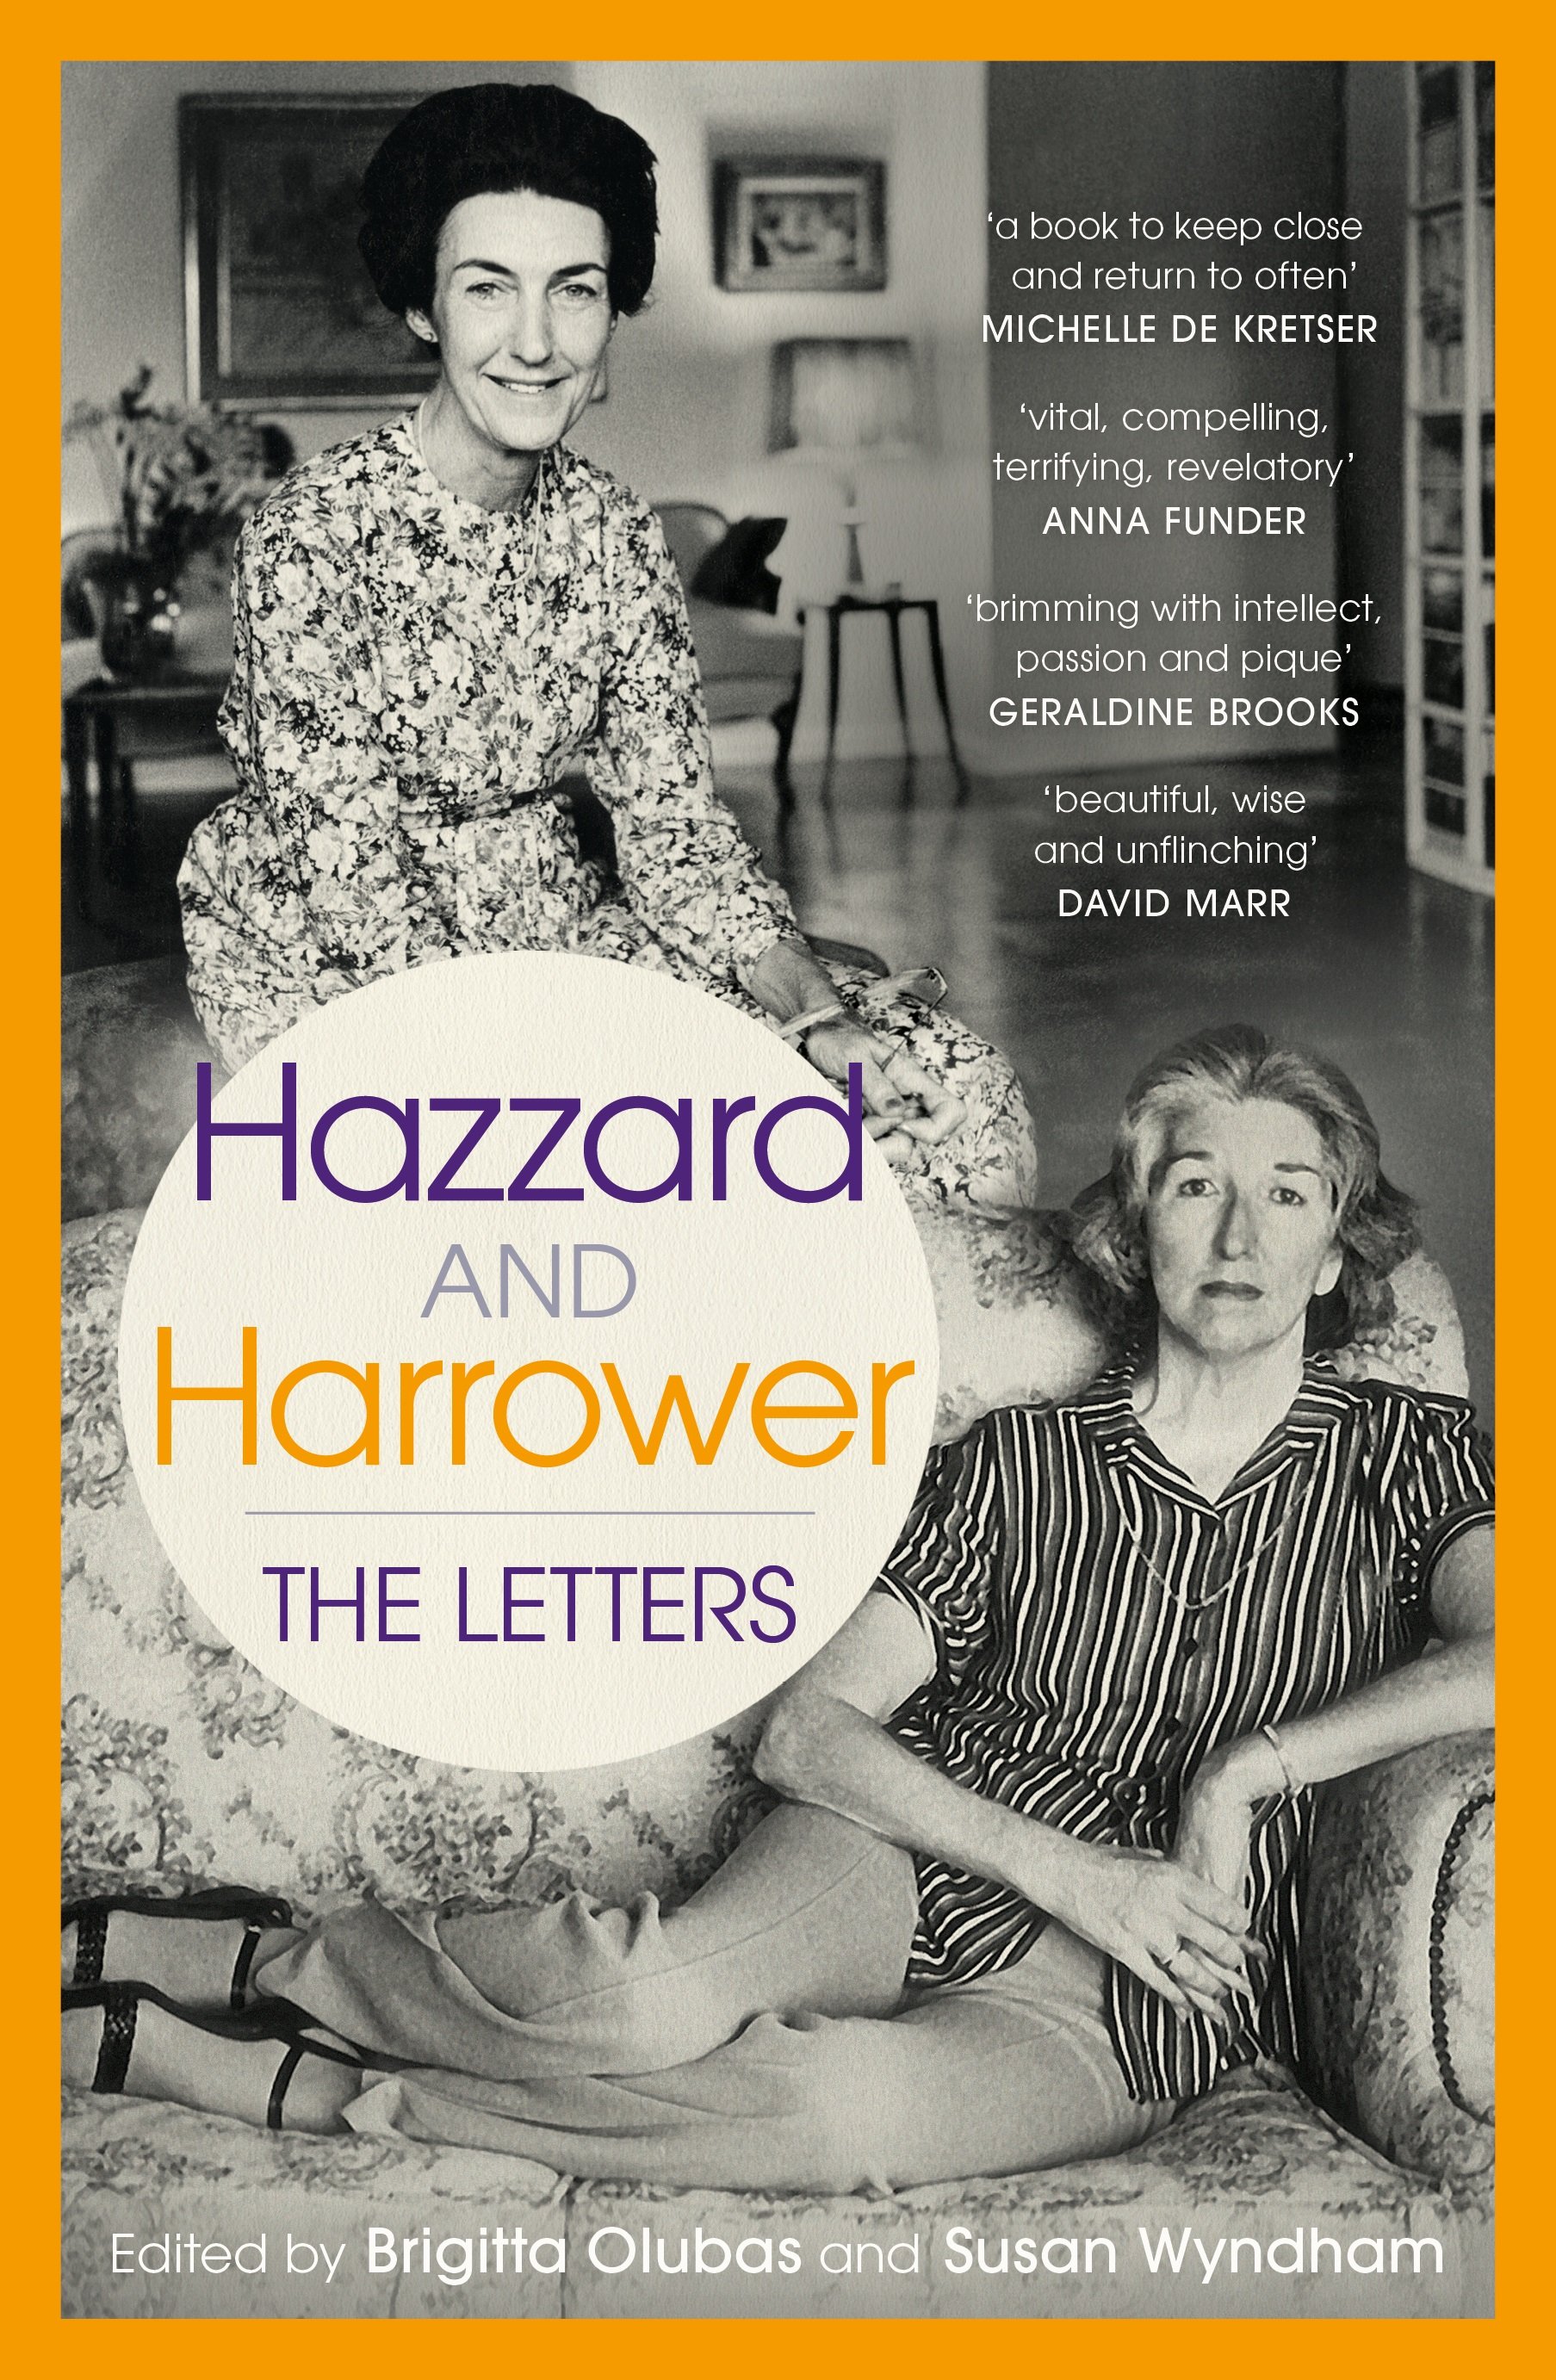 Hazzard and Harrower: The Letters  Edited by Brigitta Olubas & Susan Wyndham